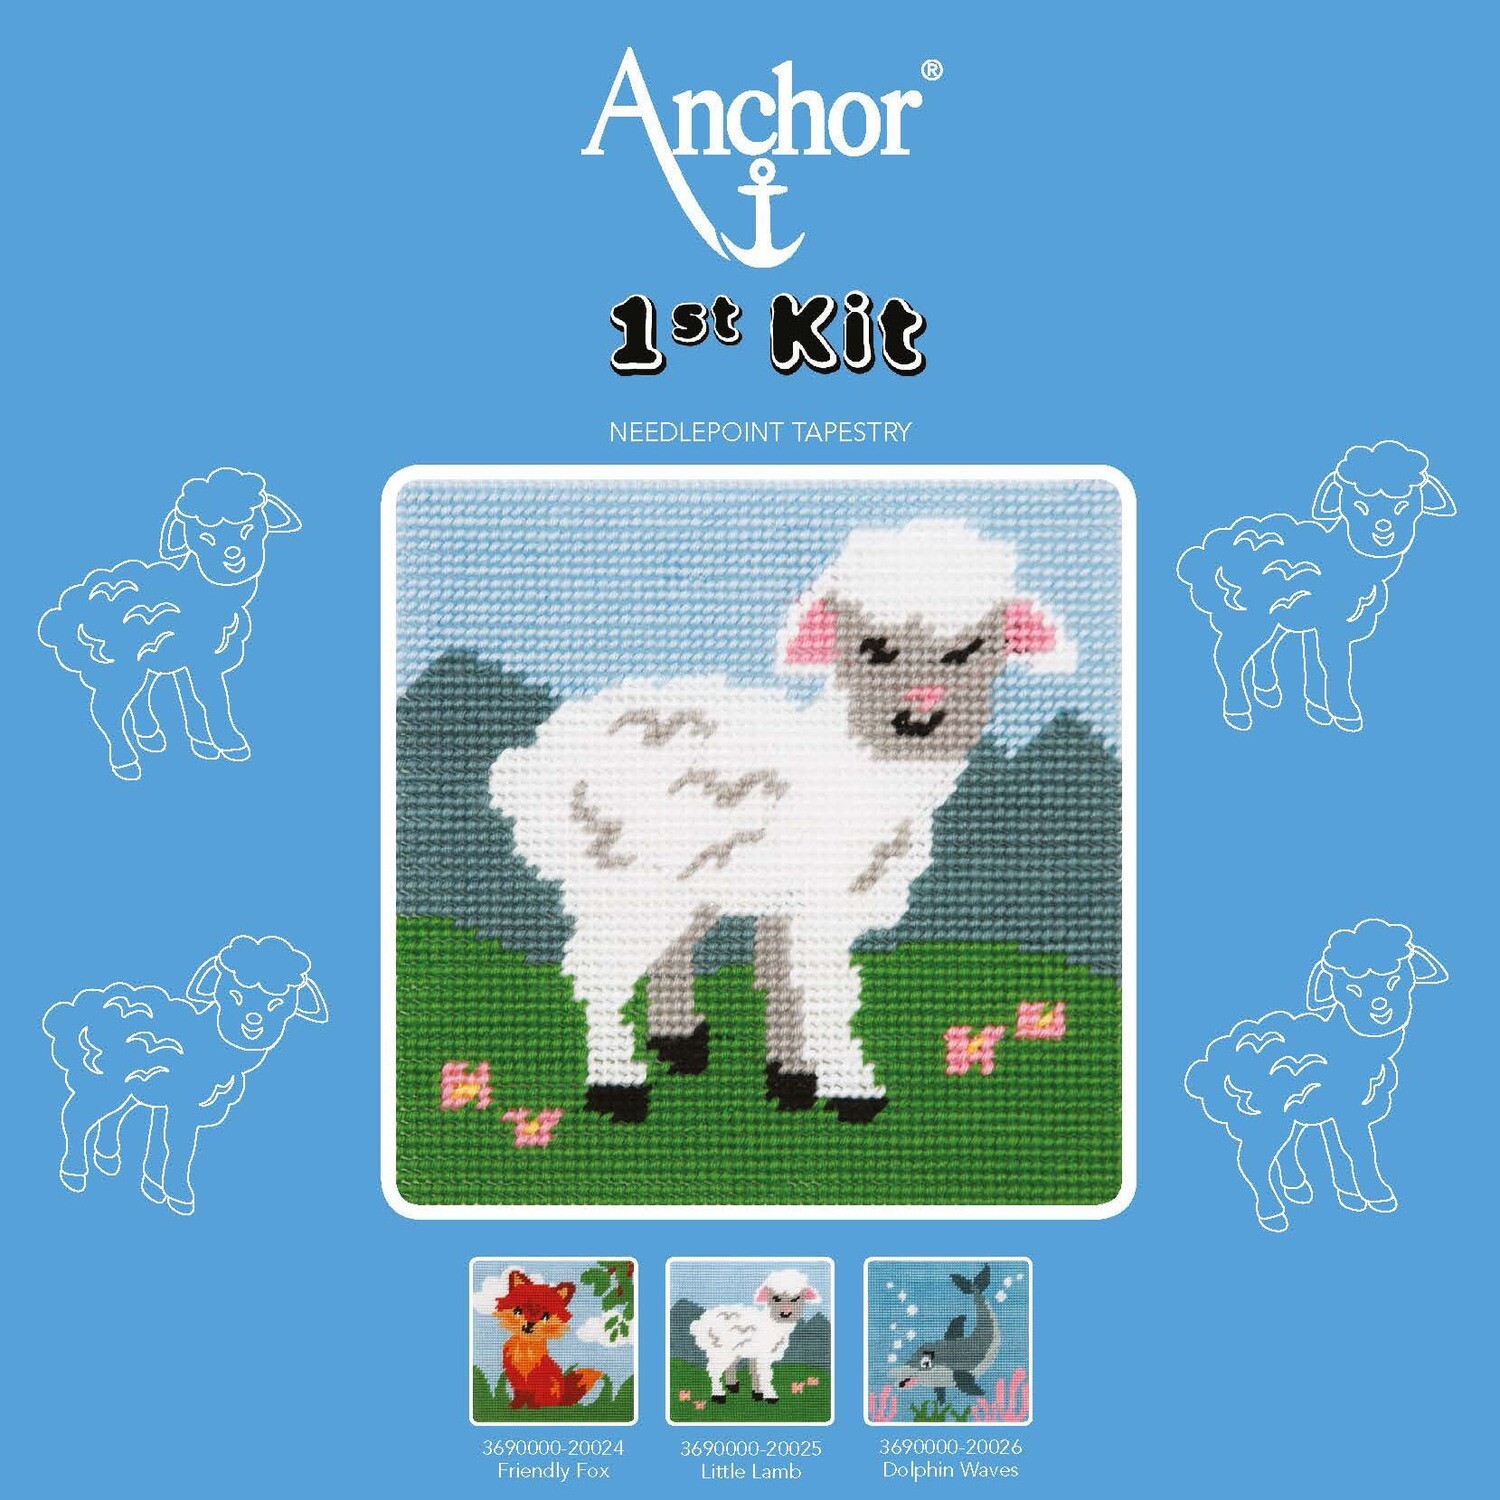 Anchor '1st Kit' gobelin hímzőkészlet gyerekeknek. Bárány 20025